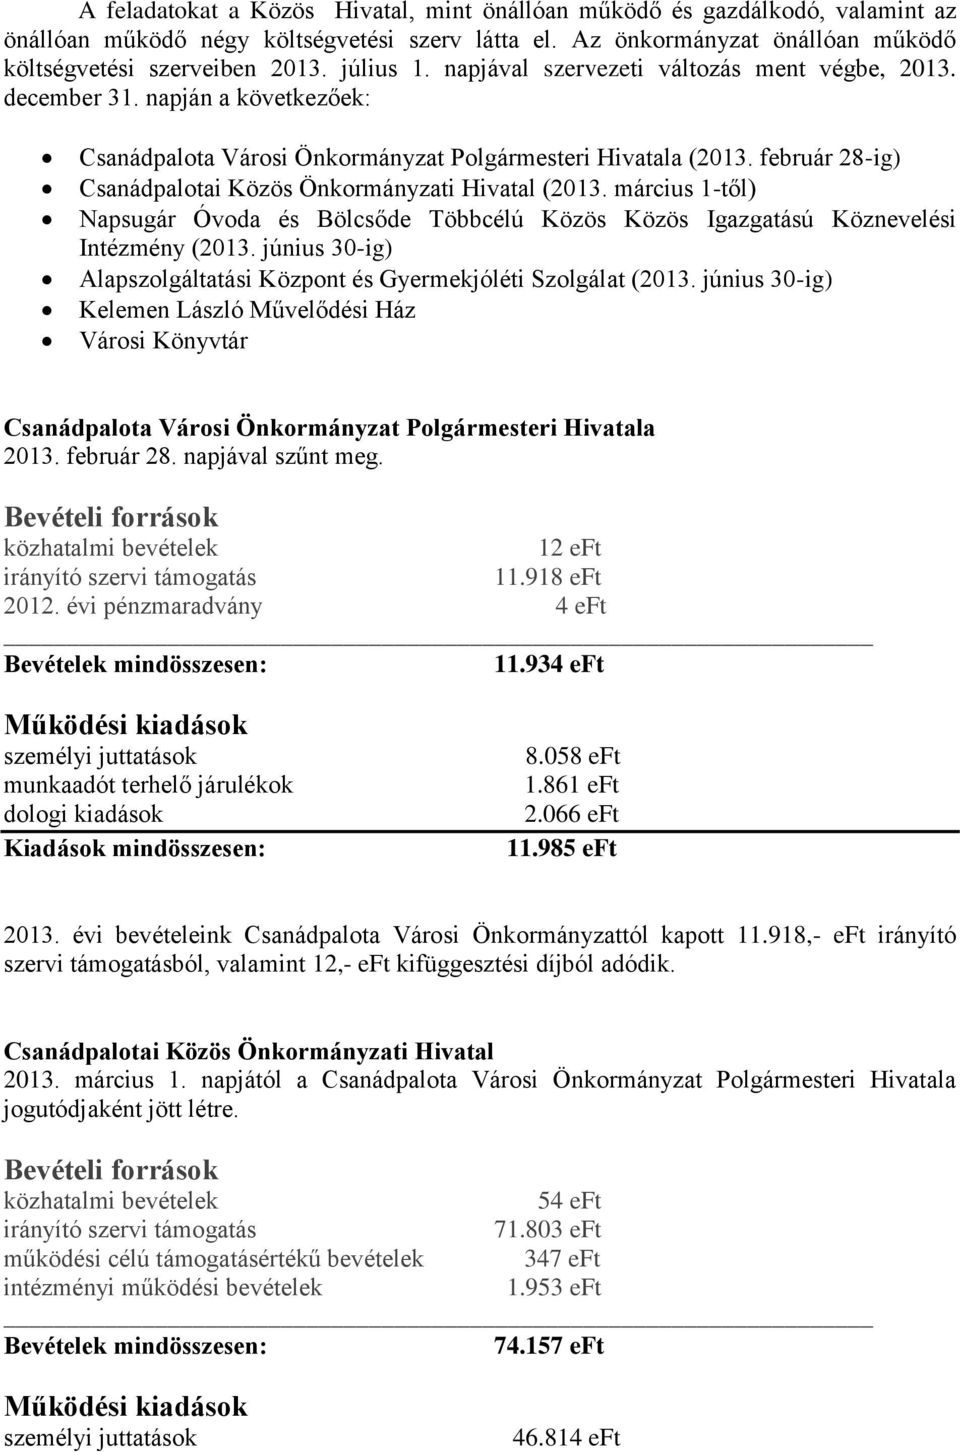 február 28-ig) Csanádpalotai Közös Önkormányzati Hivatal (2013. március 1-től) Napsugár Óvoda és Bölcsőde Többcélú Közös Közös Igazgatású Köznevelési Intézmény (2013.